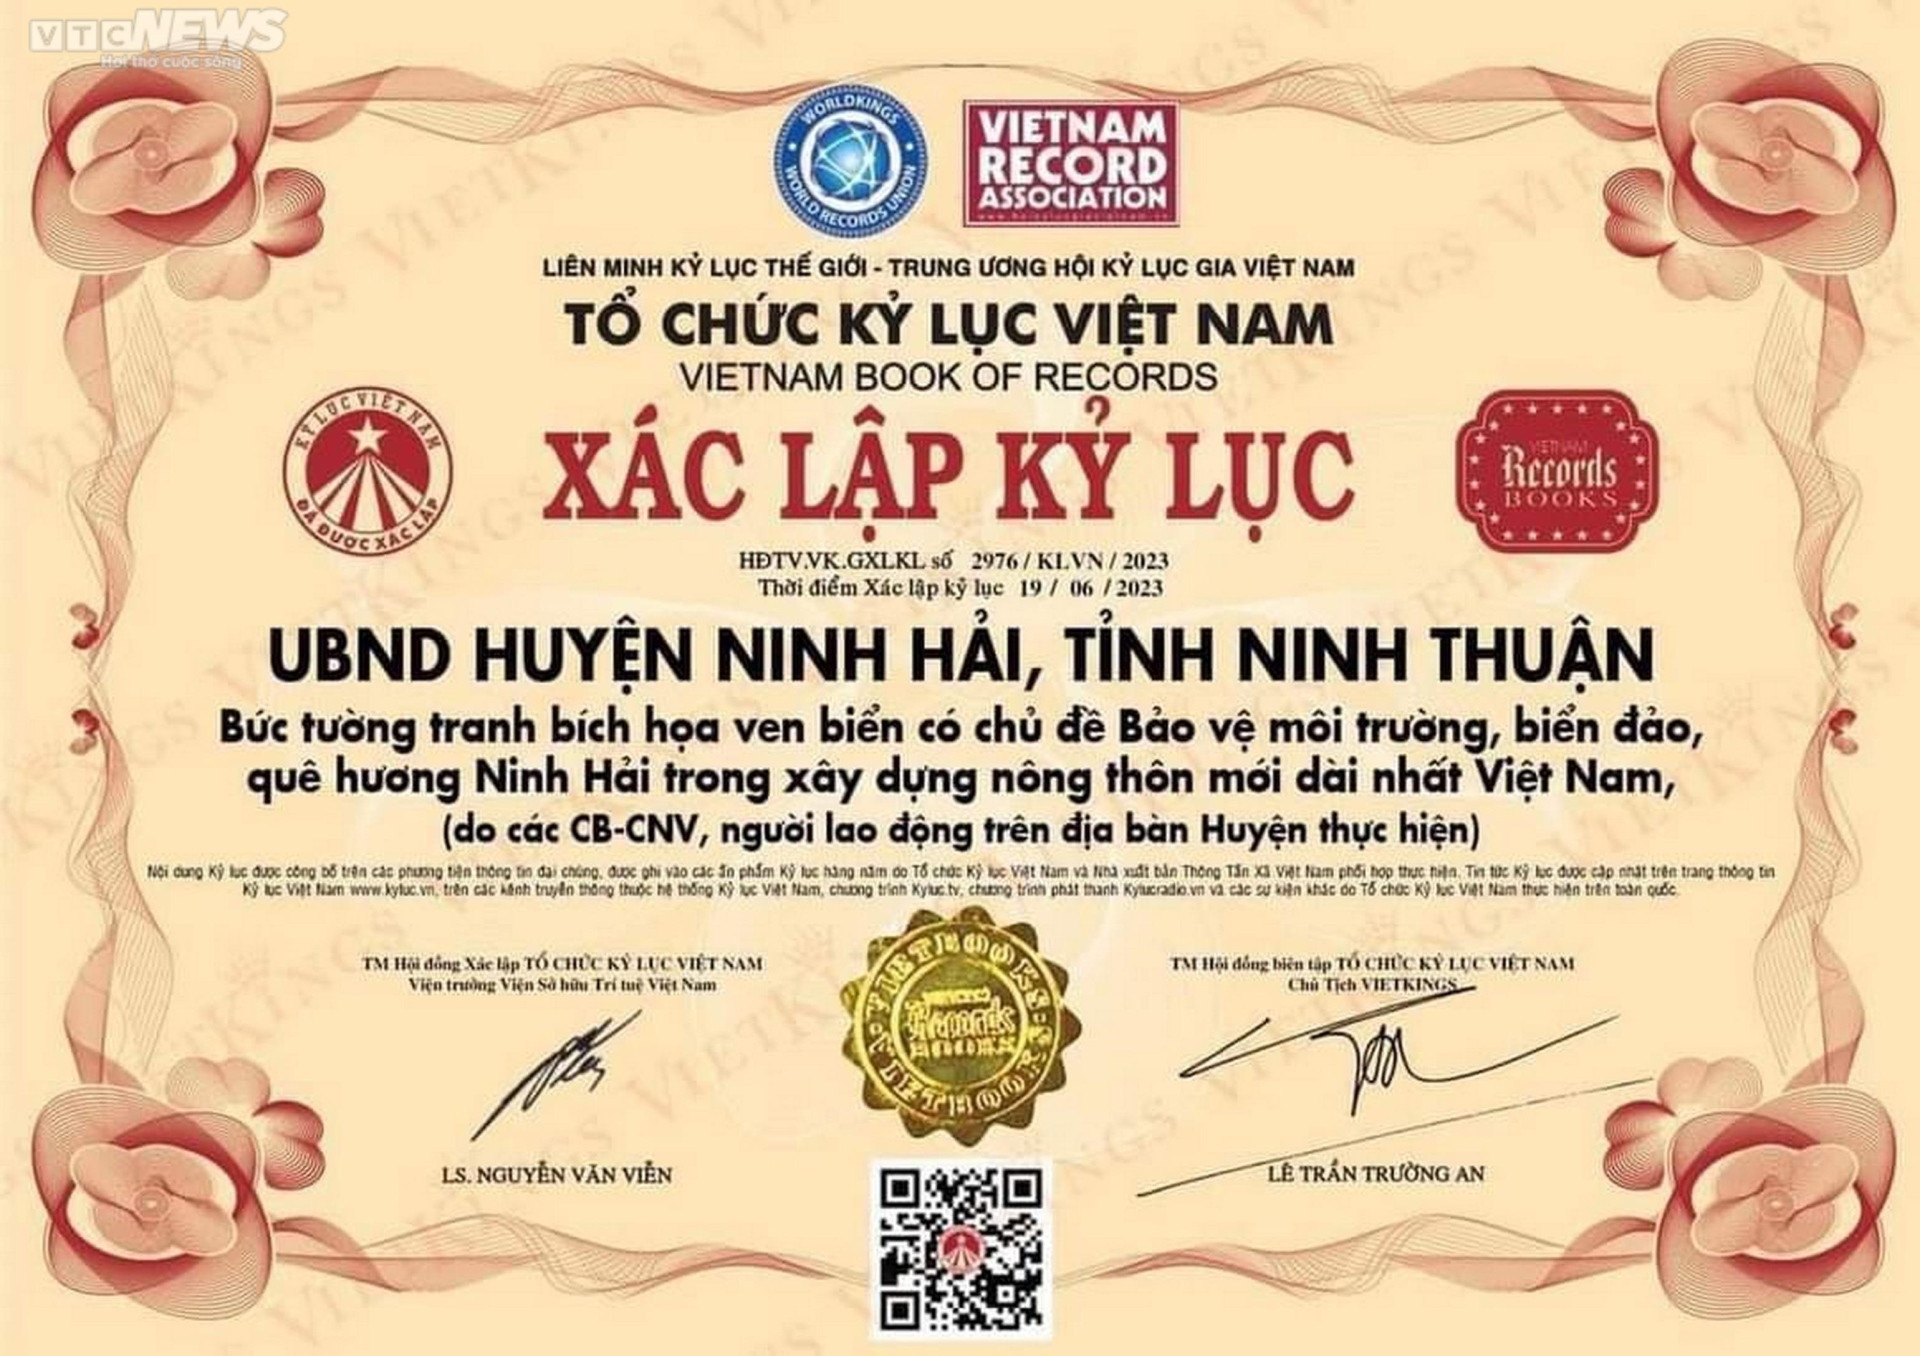 Chiêm ngưỡng bức tường tranh bích họa ven biển Ninh Thuận xác lập kỷ lục Việt Nam  - 16